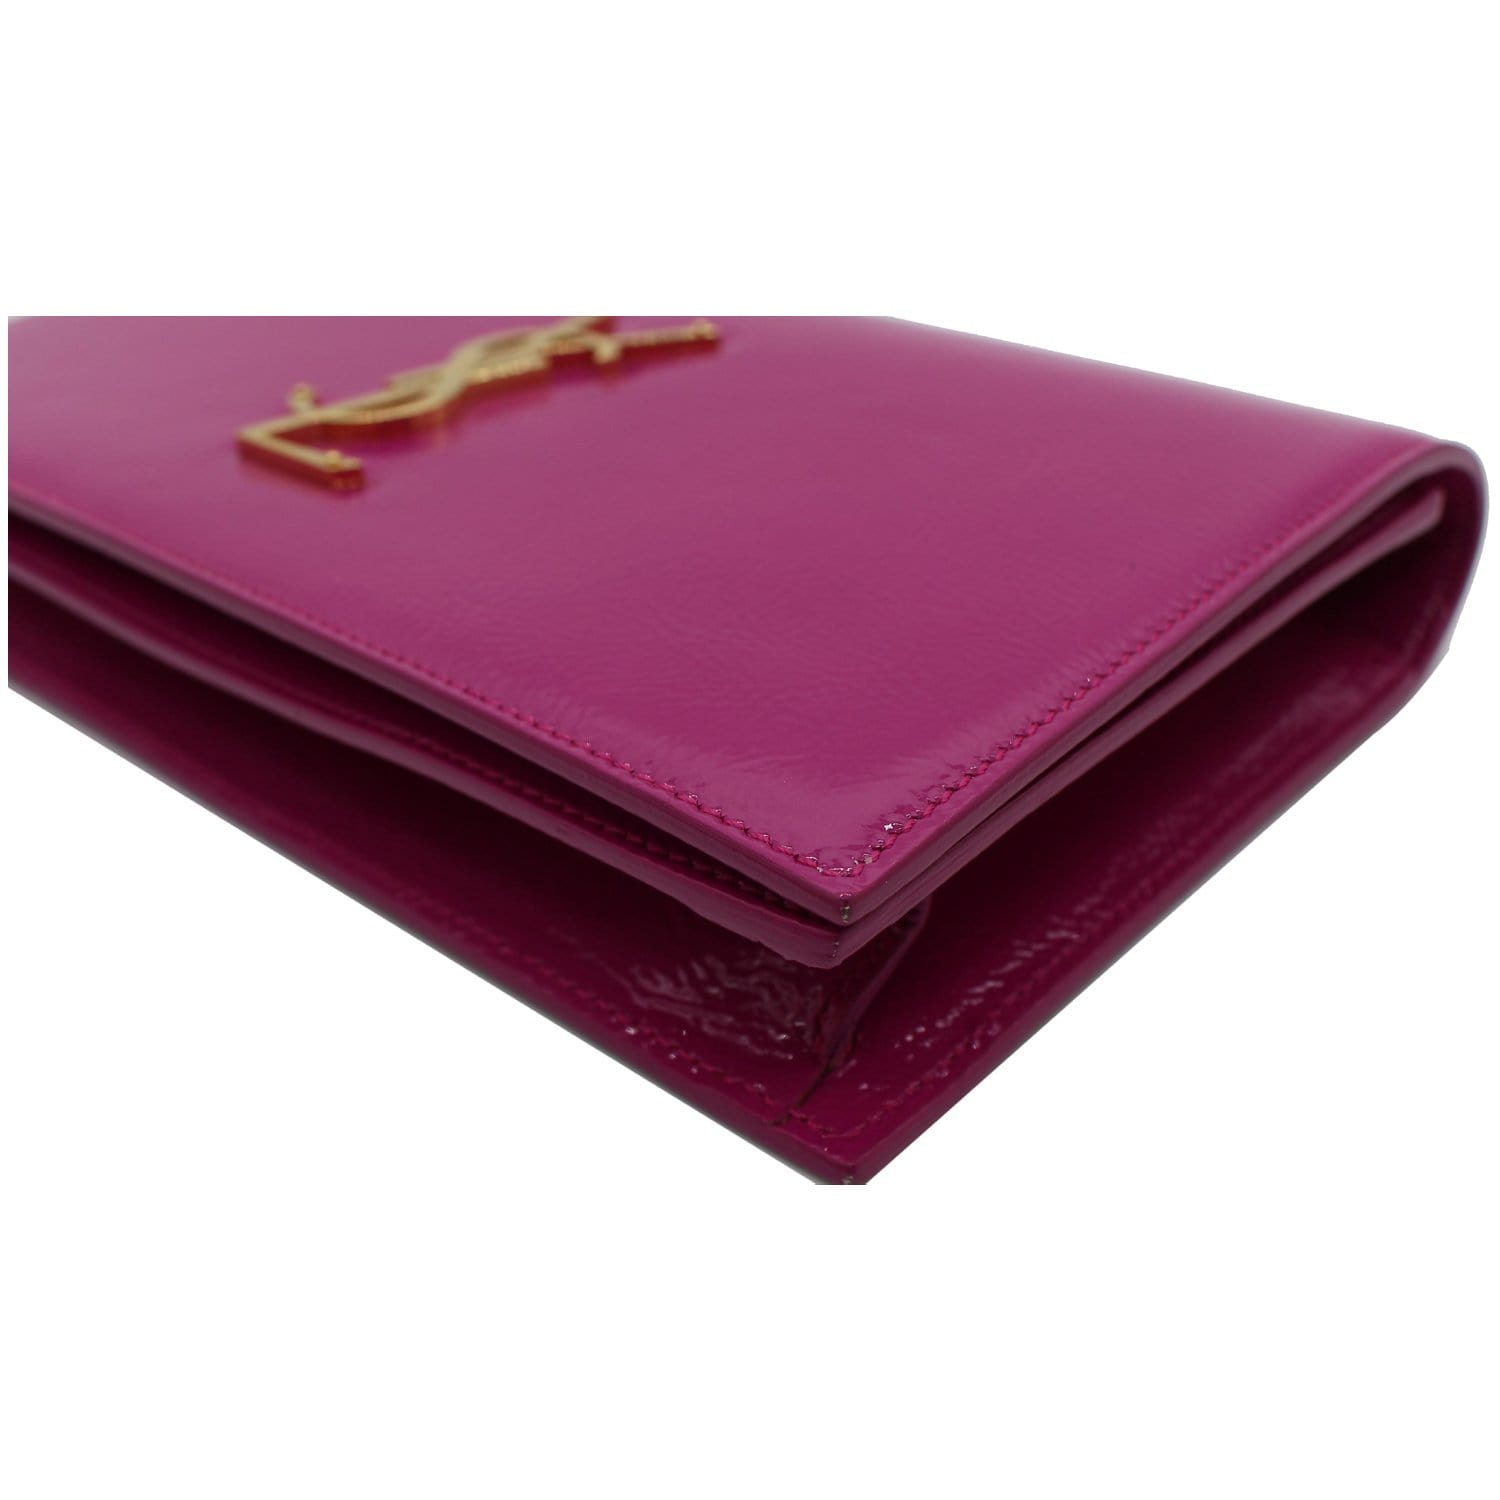 YVES SAINT LAURENT Belle de Jour Patent Leather Clutch Bag Pink